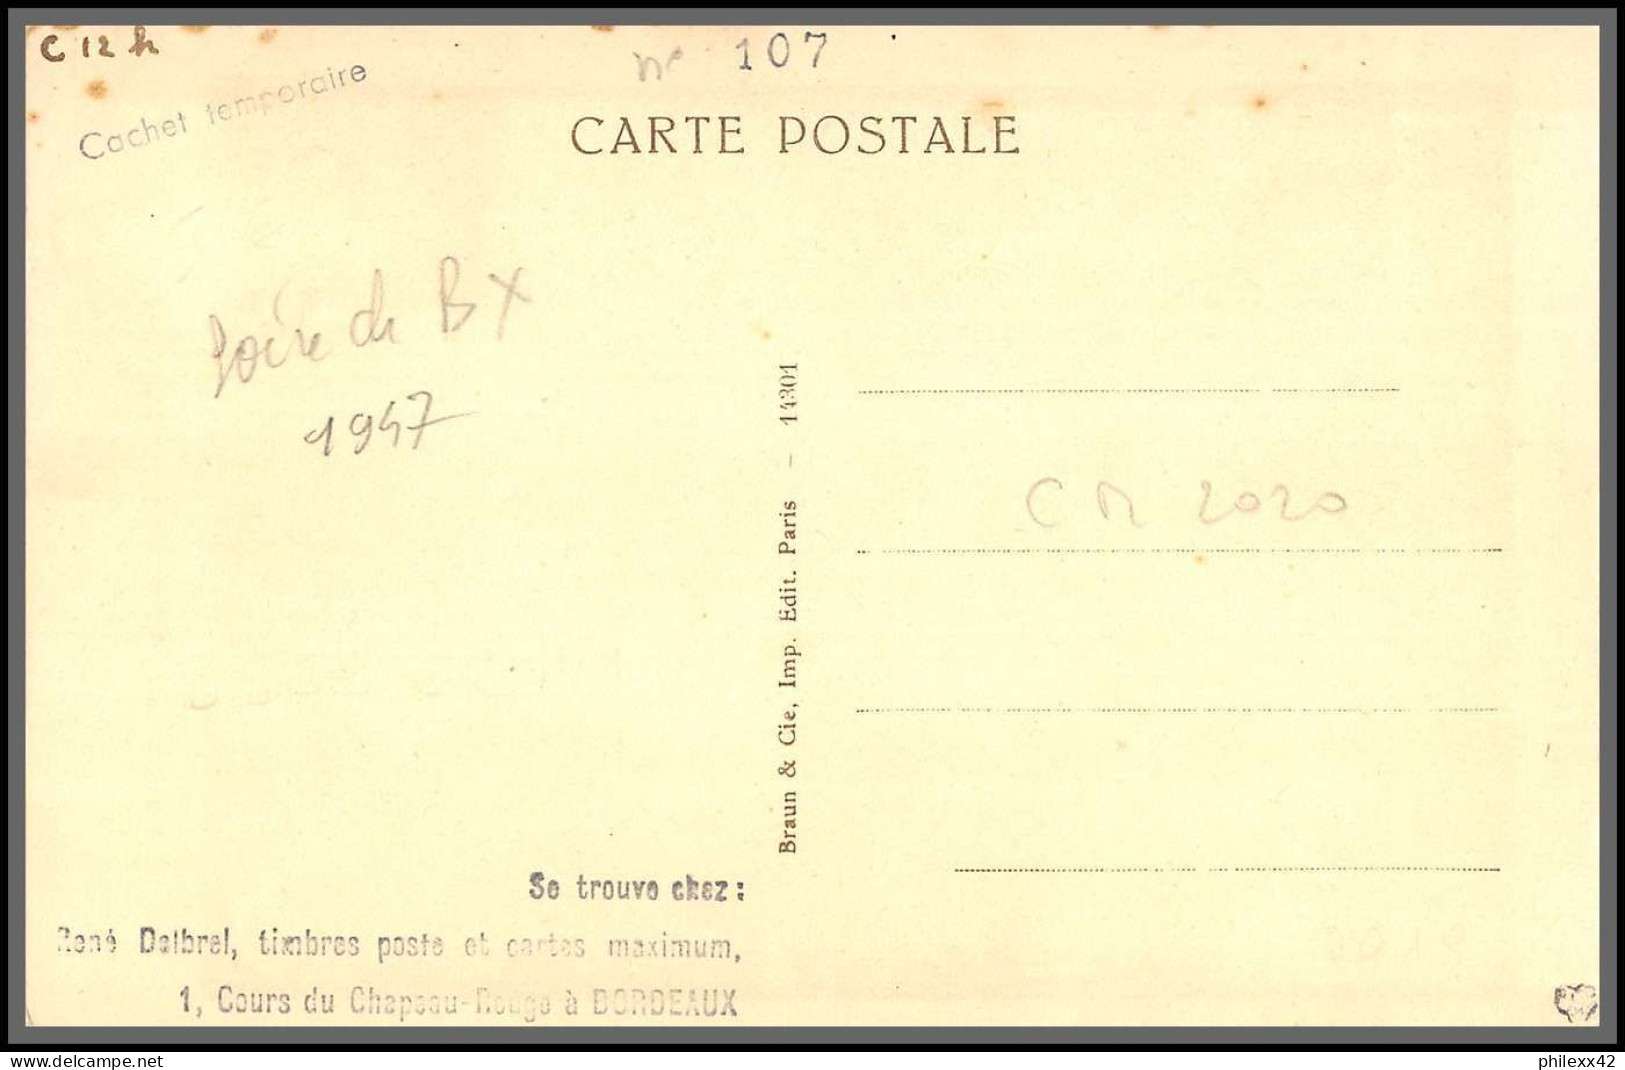 49444 N°111 blanc lot de 3 cartes la fortune et le jeune enfant 1907/1938/1947 France femme ange angelot Carte maximum